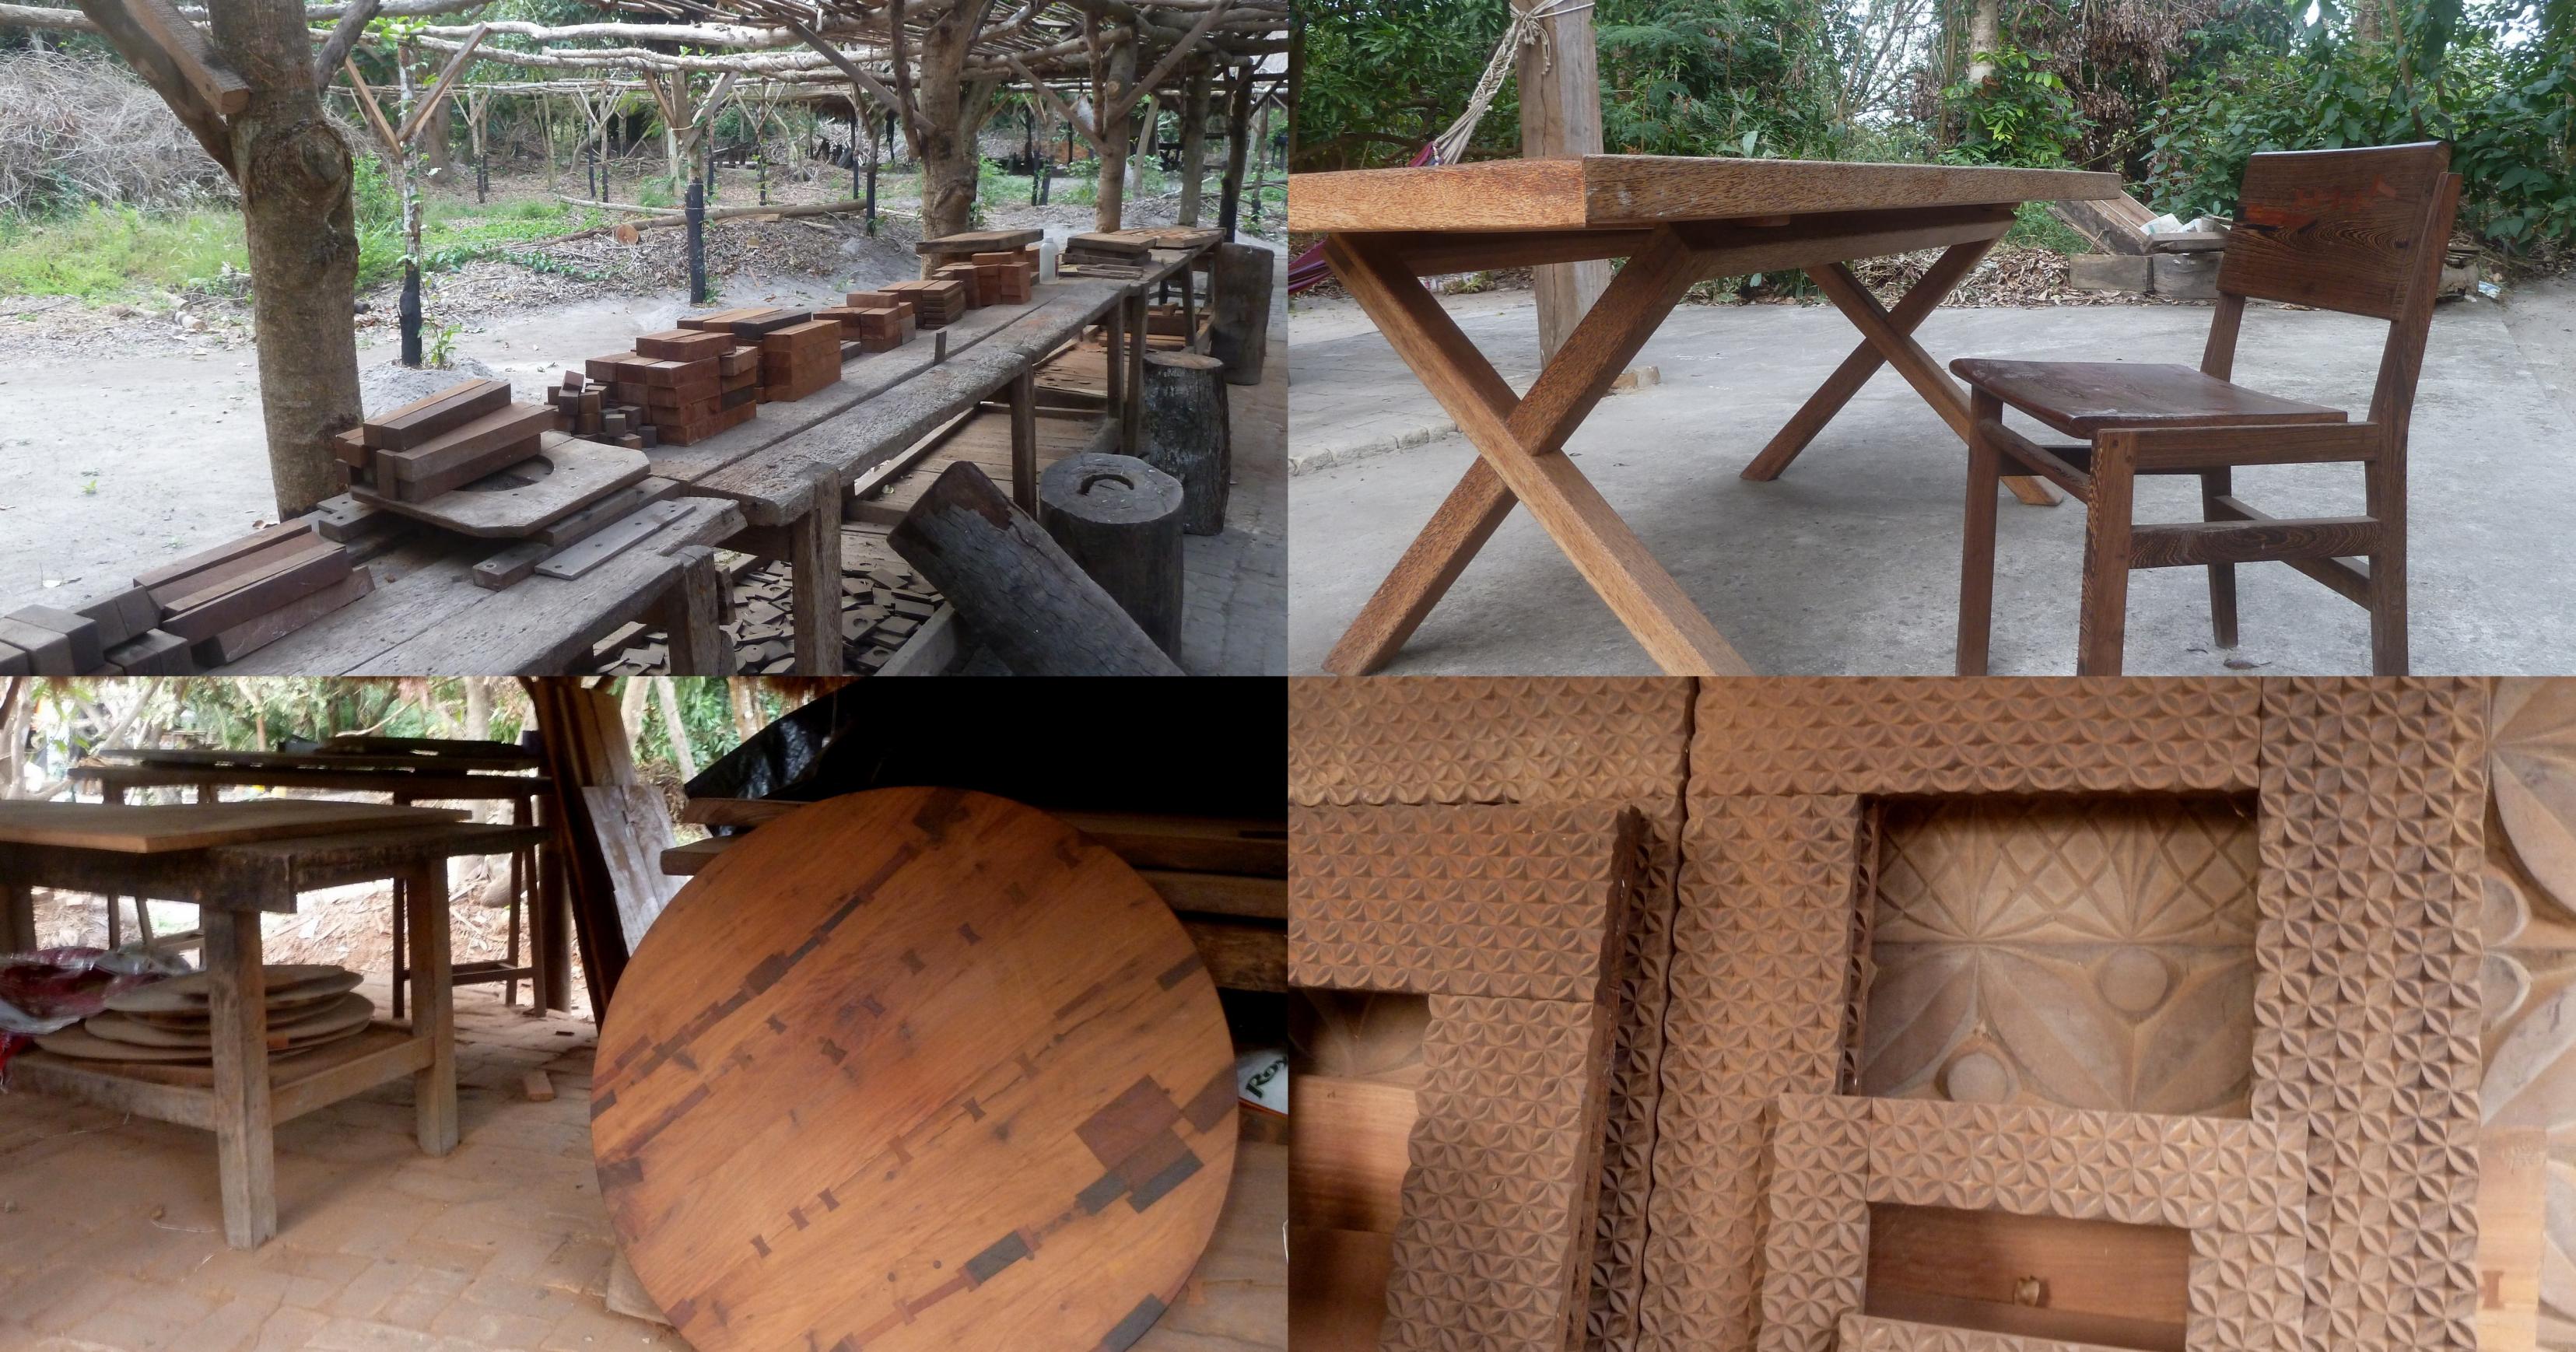 Mehrere Fotos aus Mezimbite – die Schreinerwerkstatt und Möbel, die in Mezimbite aus nachhaltiger Waldwirtschaft gefertigt wurden.